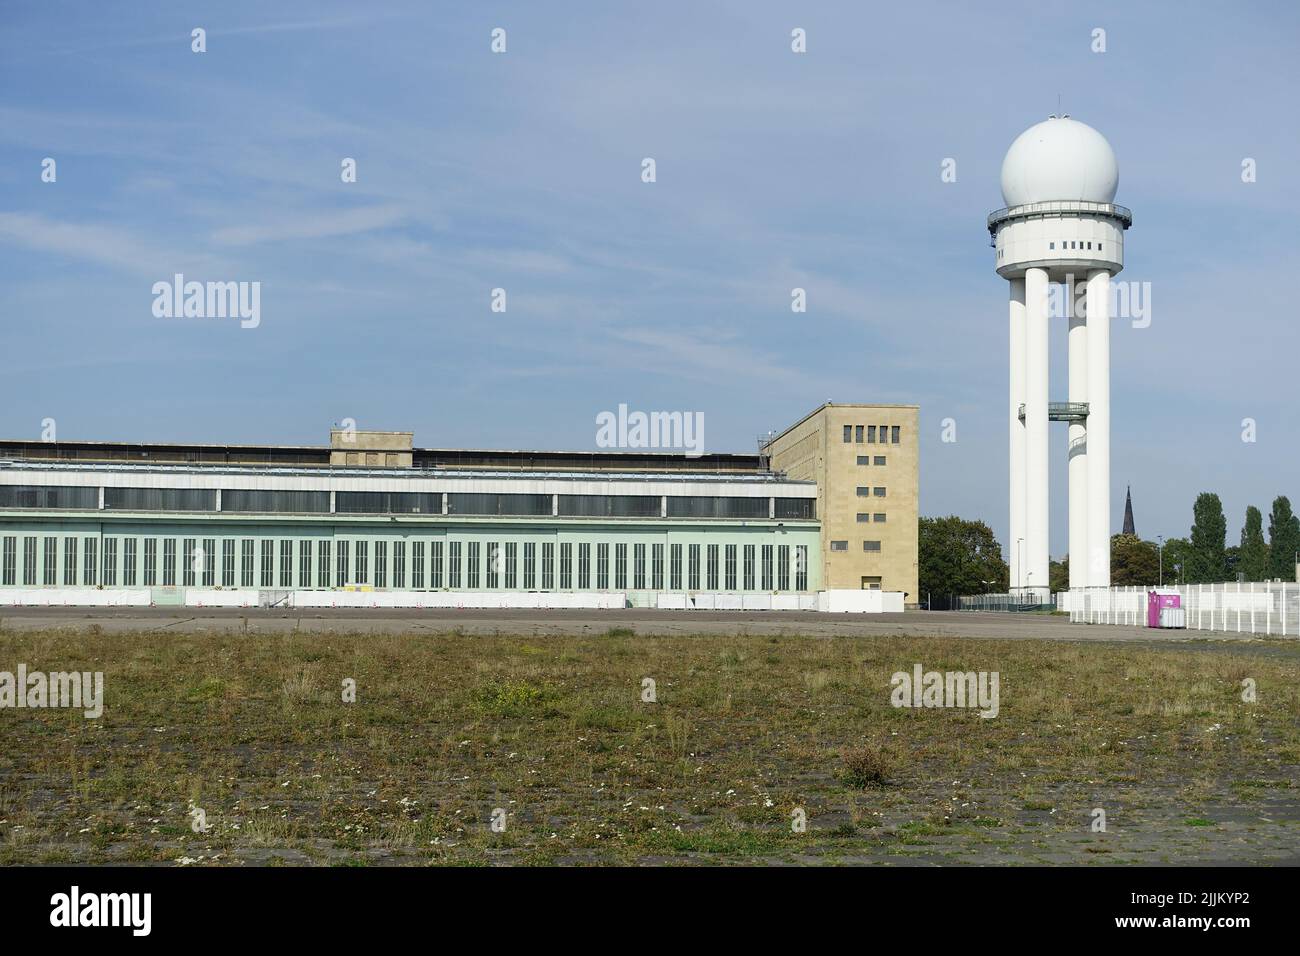 Berlino, Flughafen Tempelhof, Flugfeld, Radarturm, 1982 Foto Stock